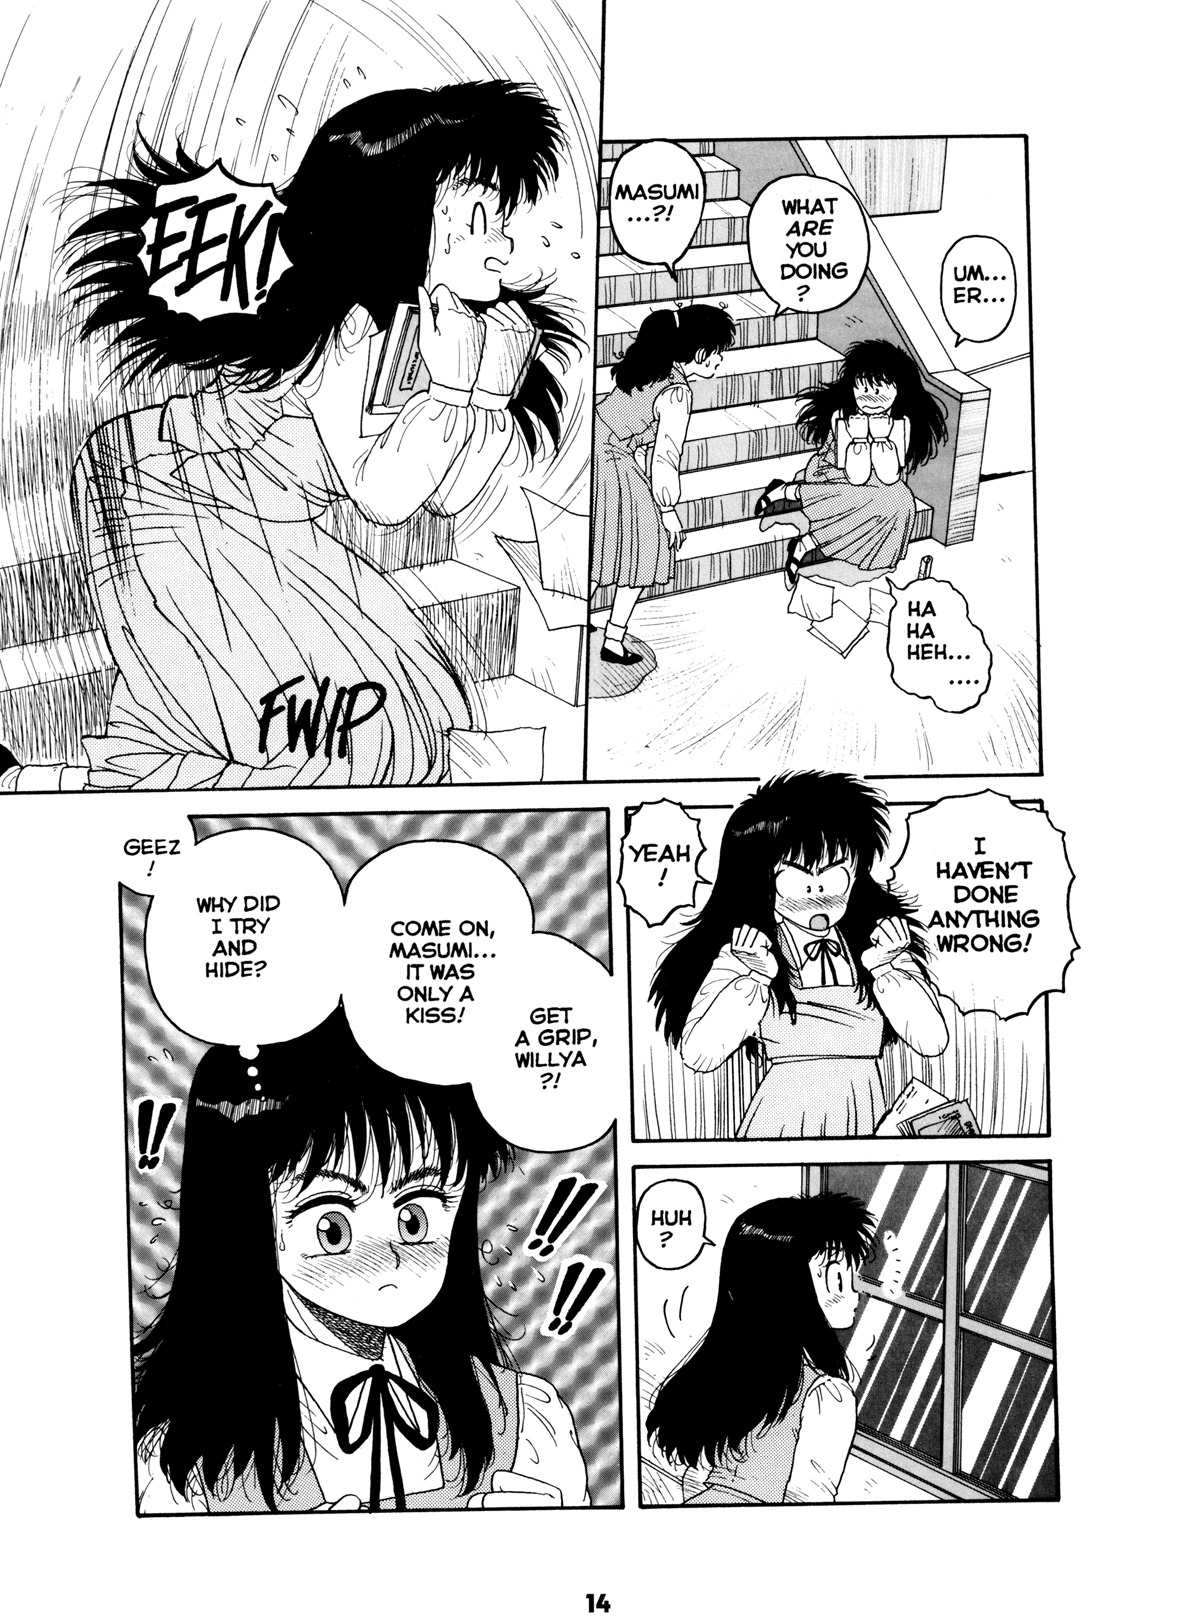 Misty Girl Extreme 13 hentai manga